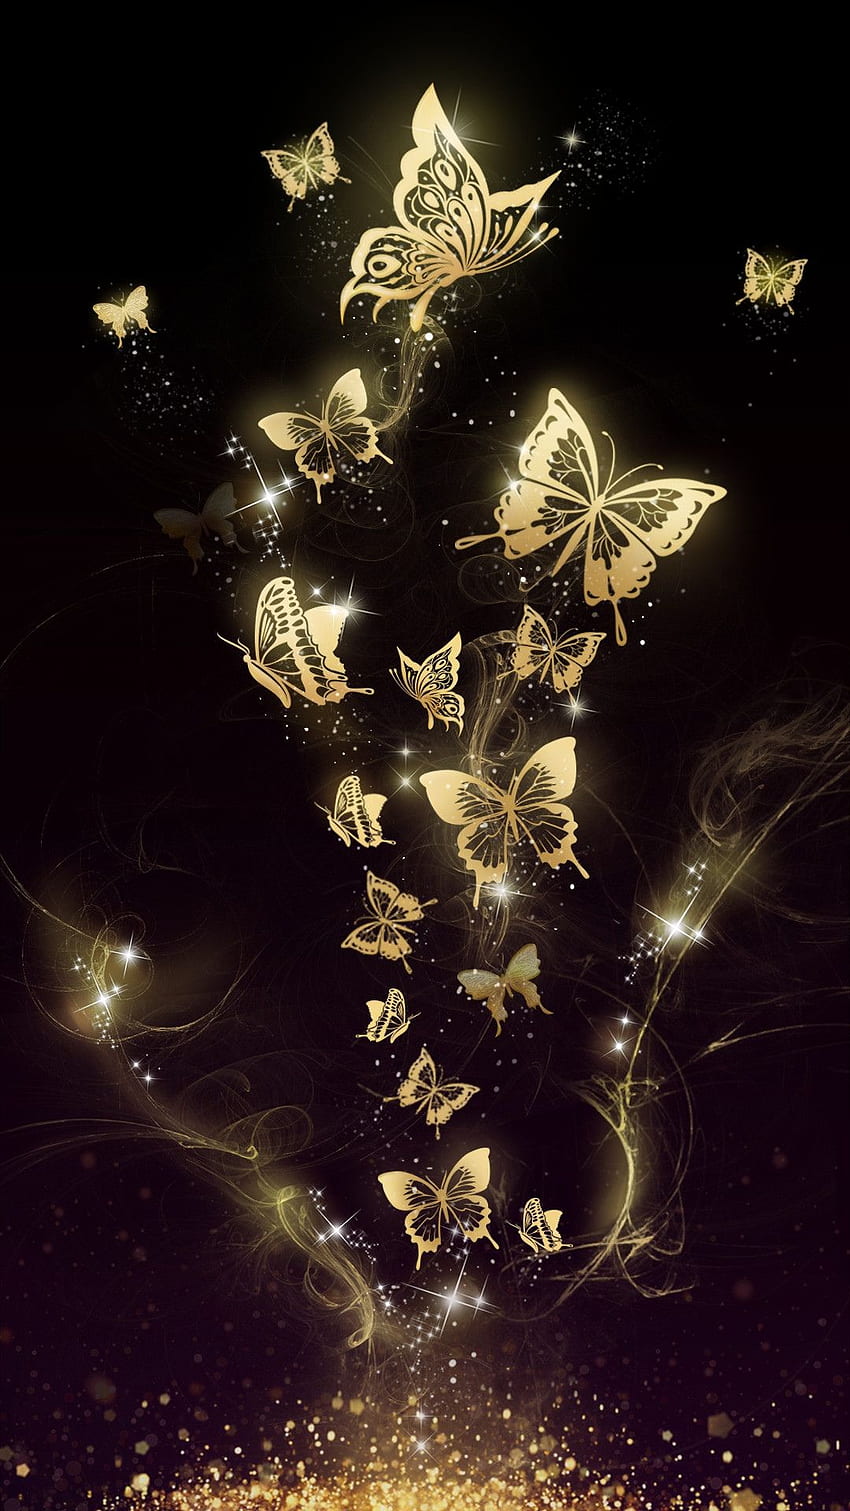 Butterfly iPhone Wallpaper  iDrop News